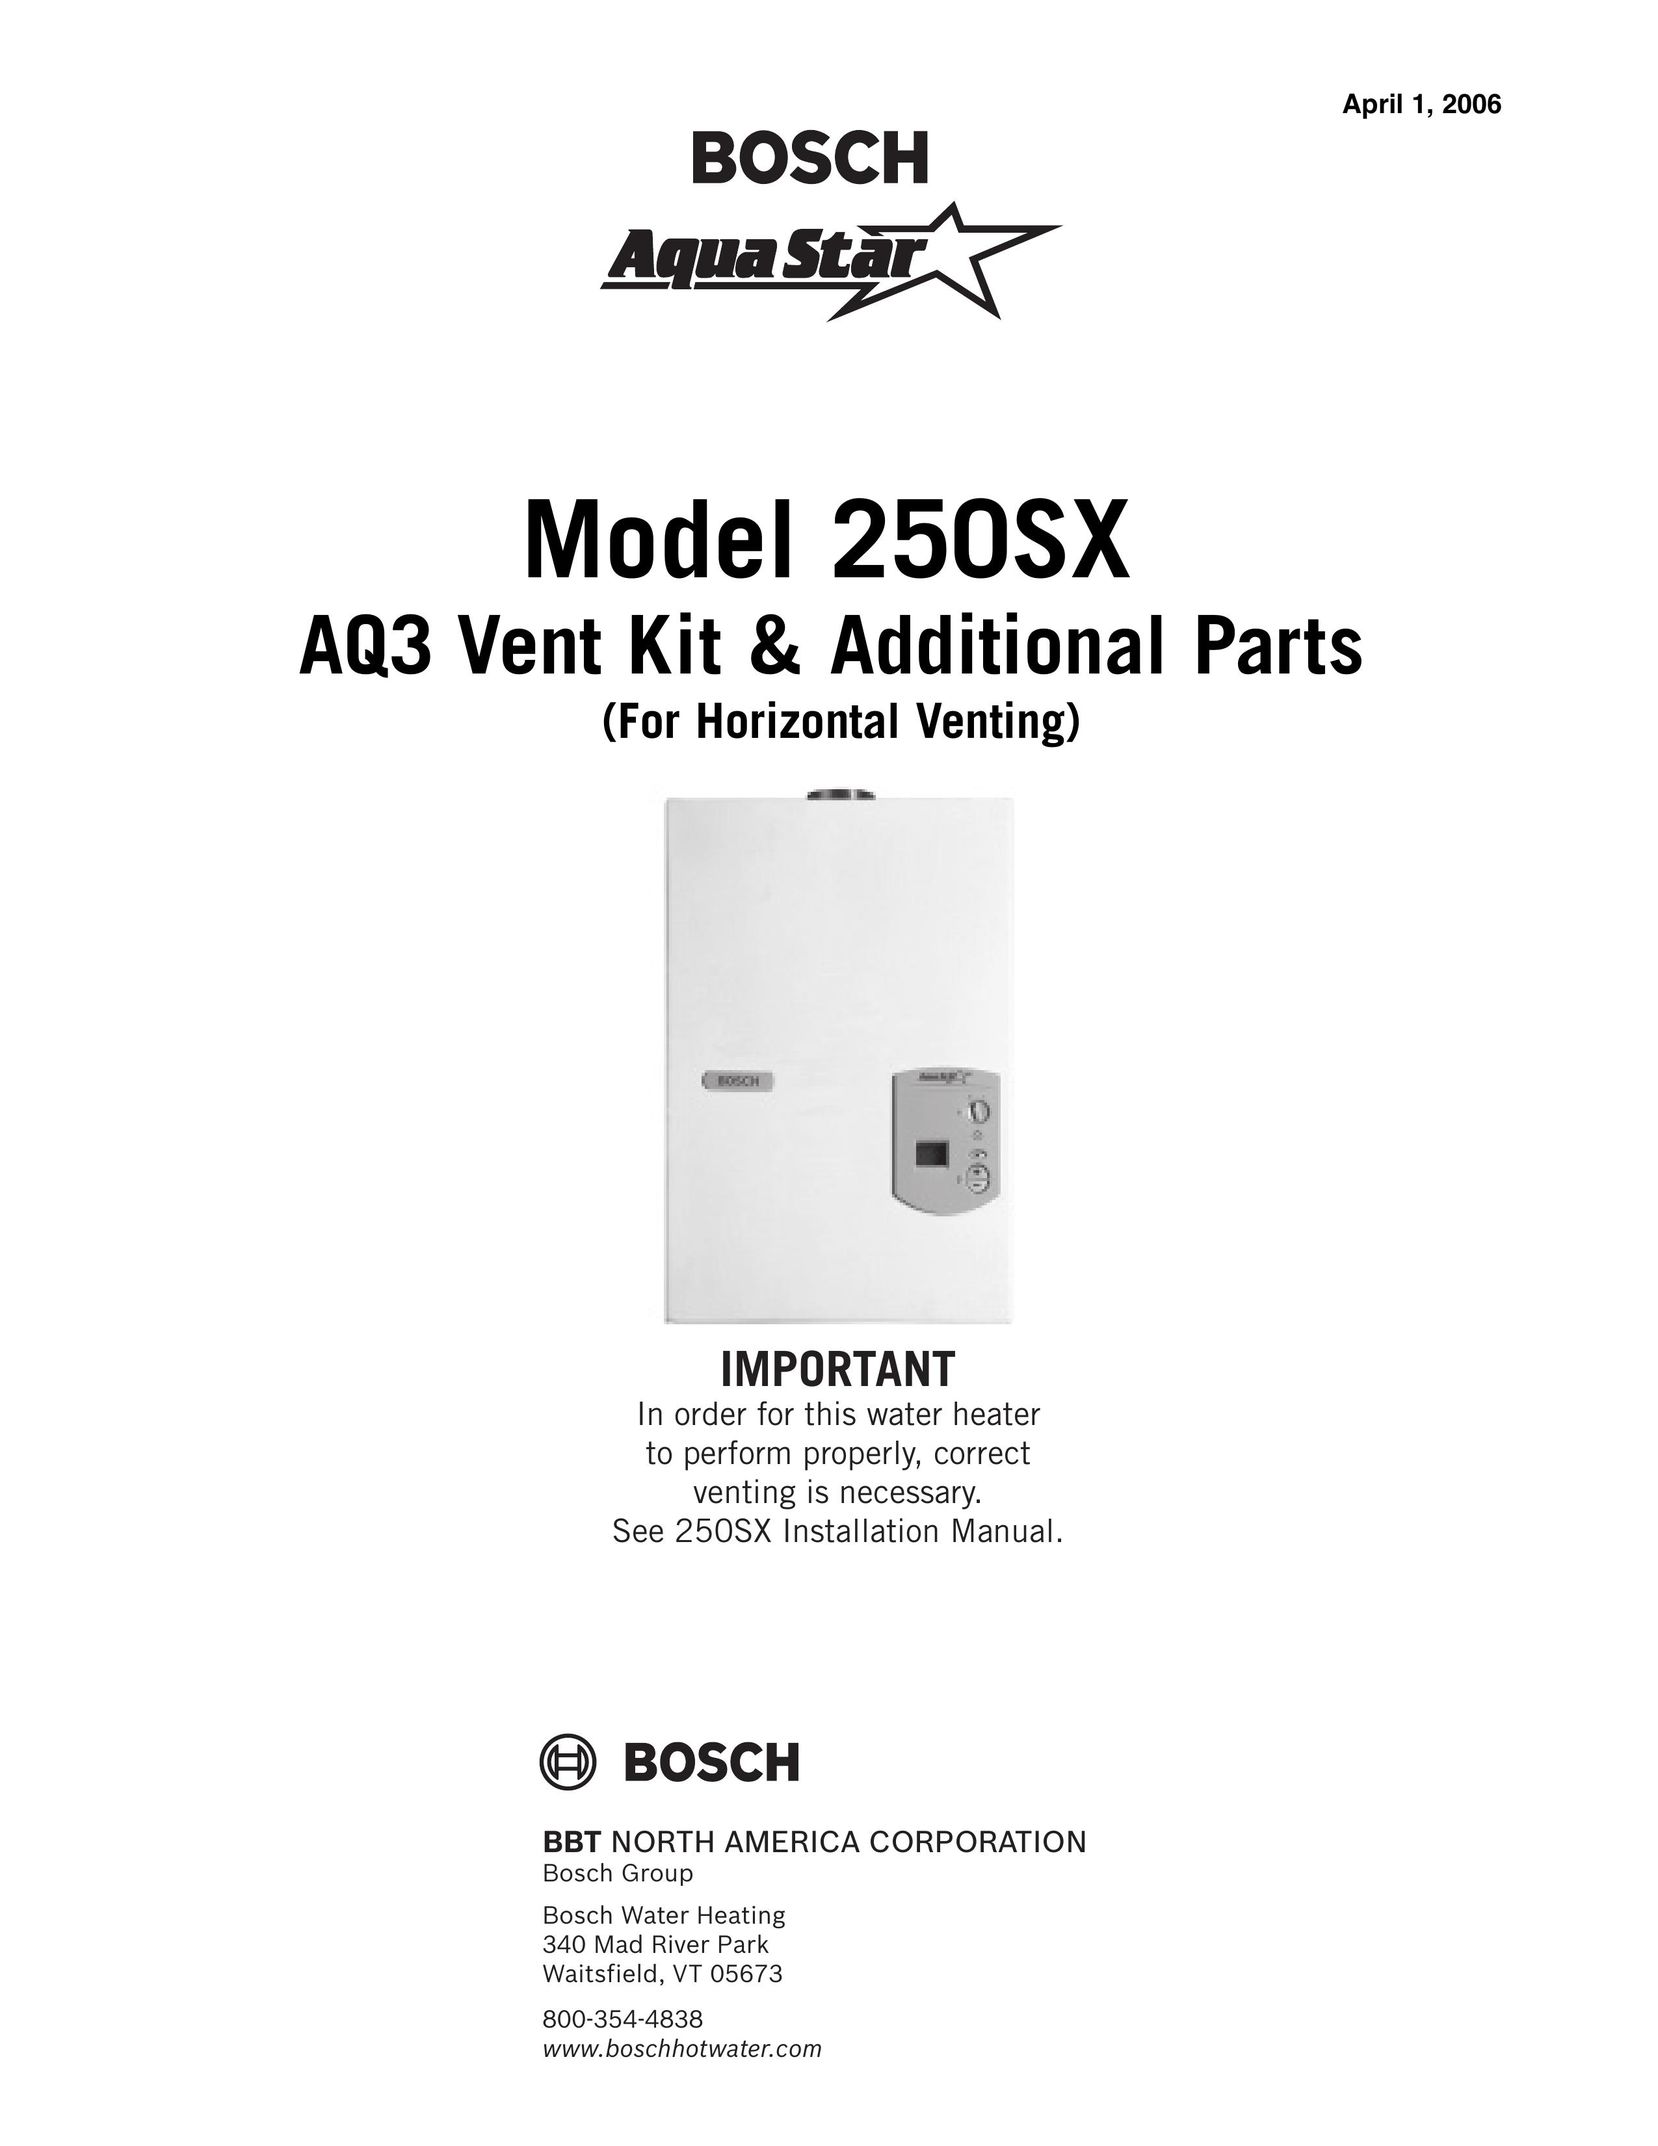 AquaStar AQ3ES Appliance Trim Kit User Manual